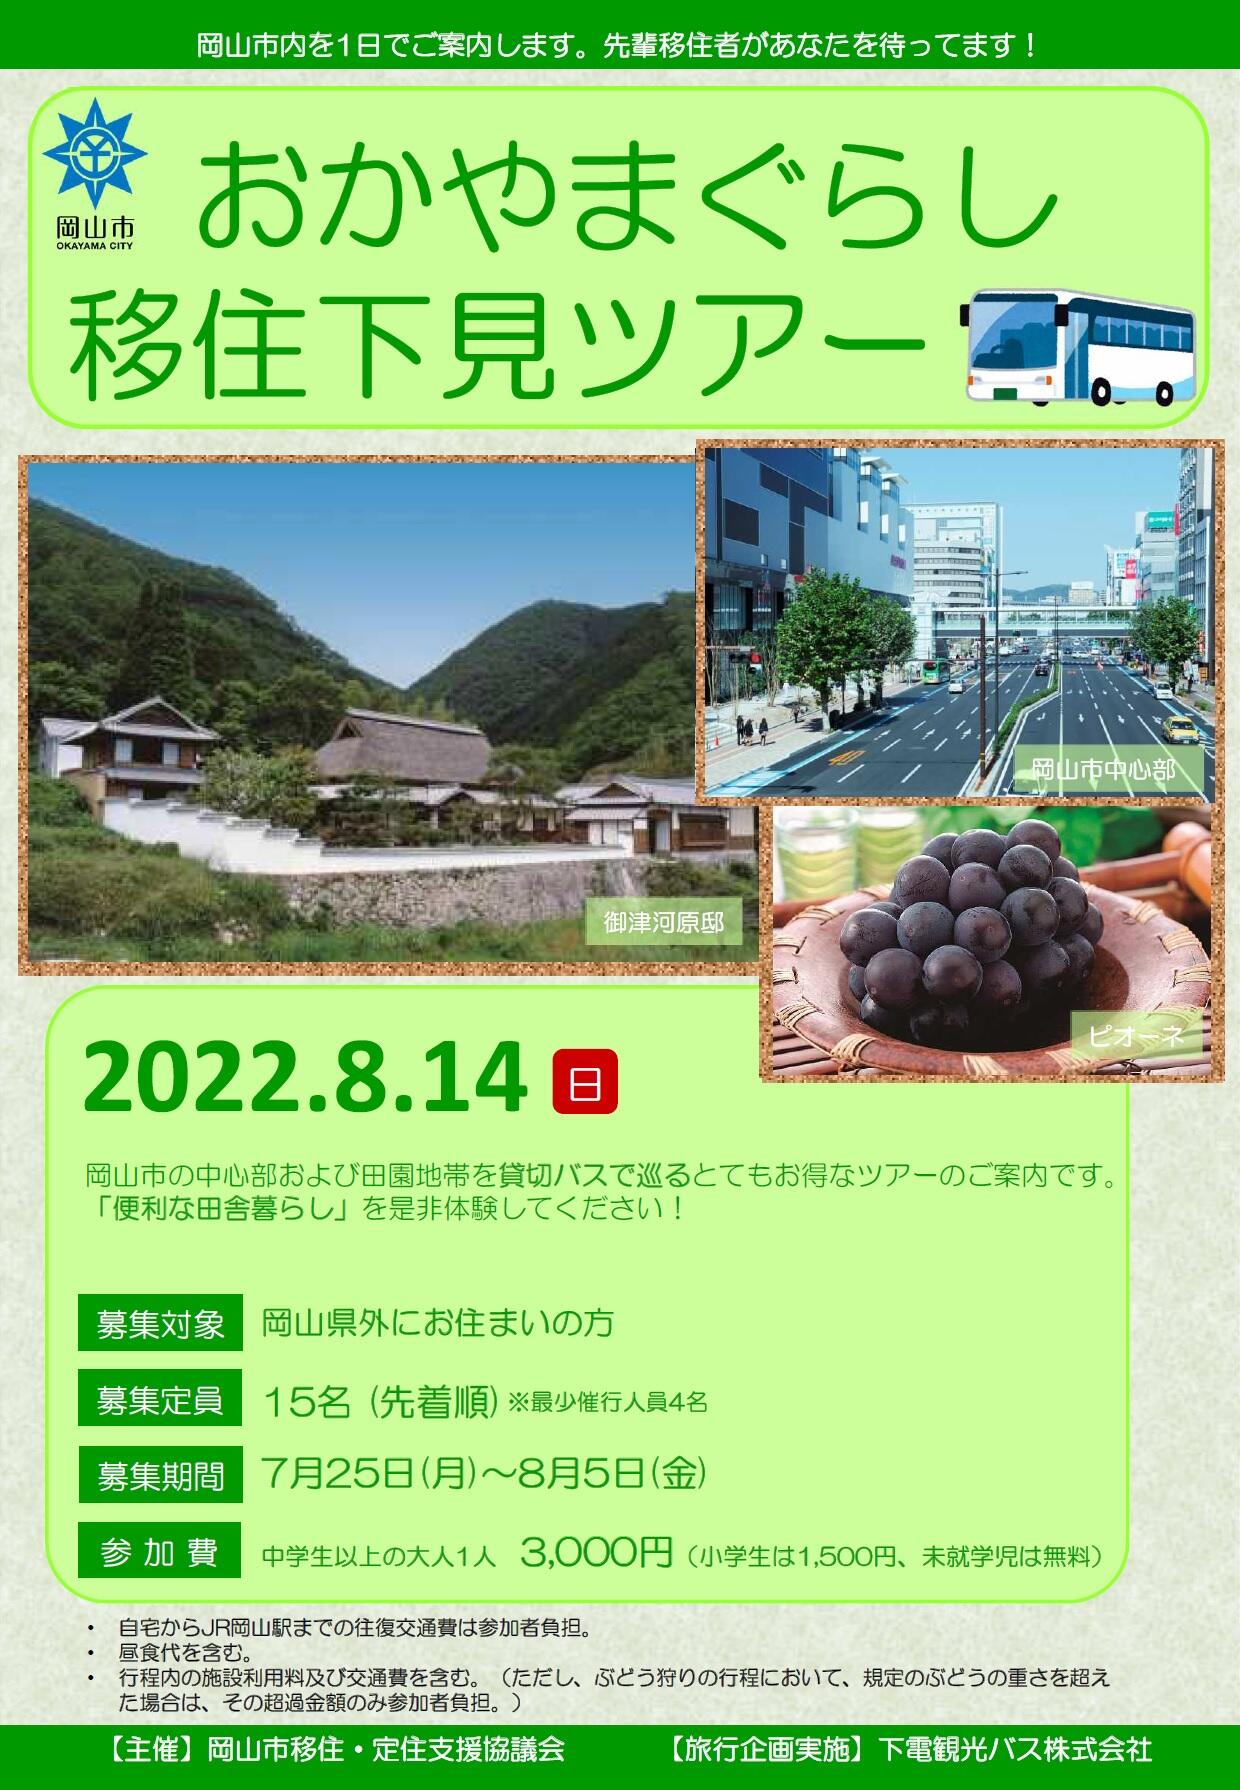 https://www.okayama-iju.jp/municipality/01okayama/2cddb3d07aecd3490bbb3a5e69b20ce170a90da1.jpg